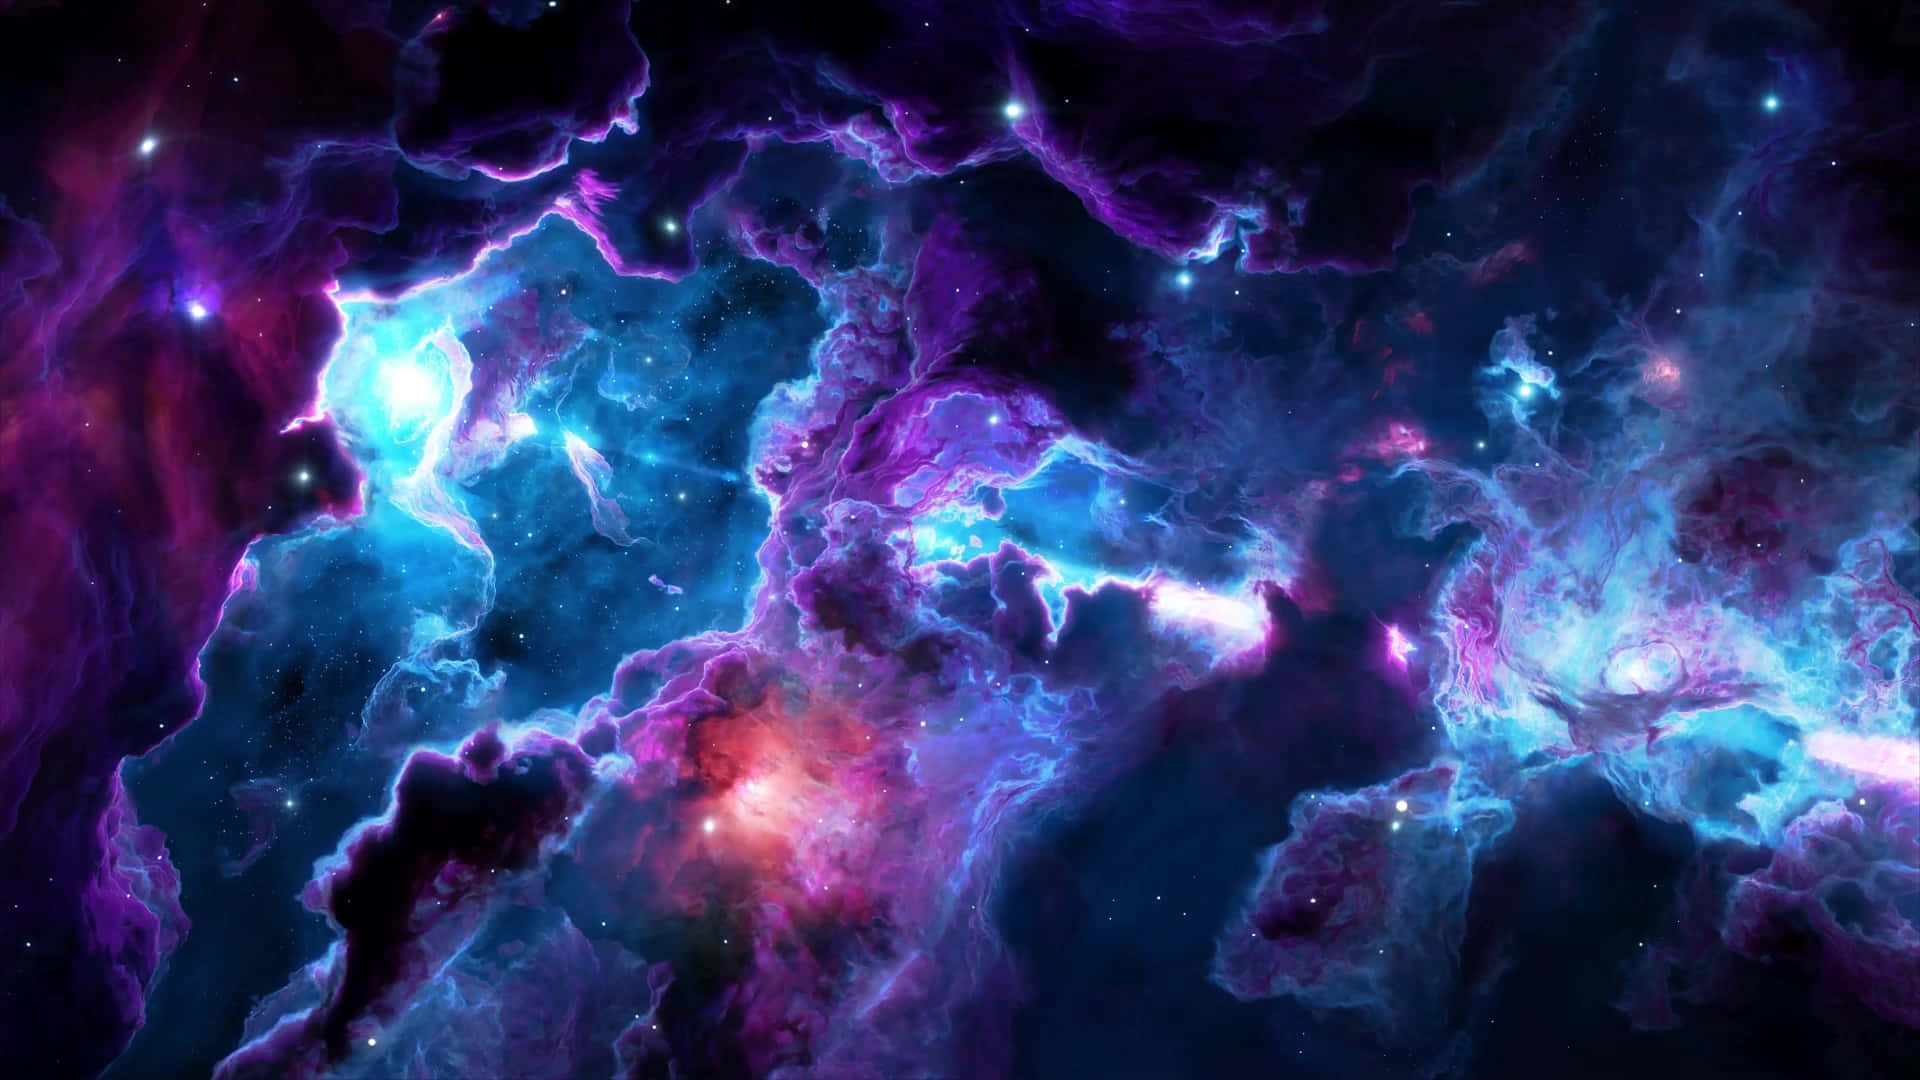 "The Beauty of Nebula Expanse"